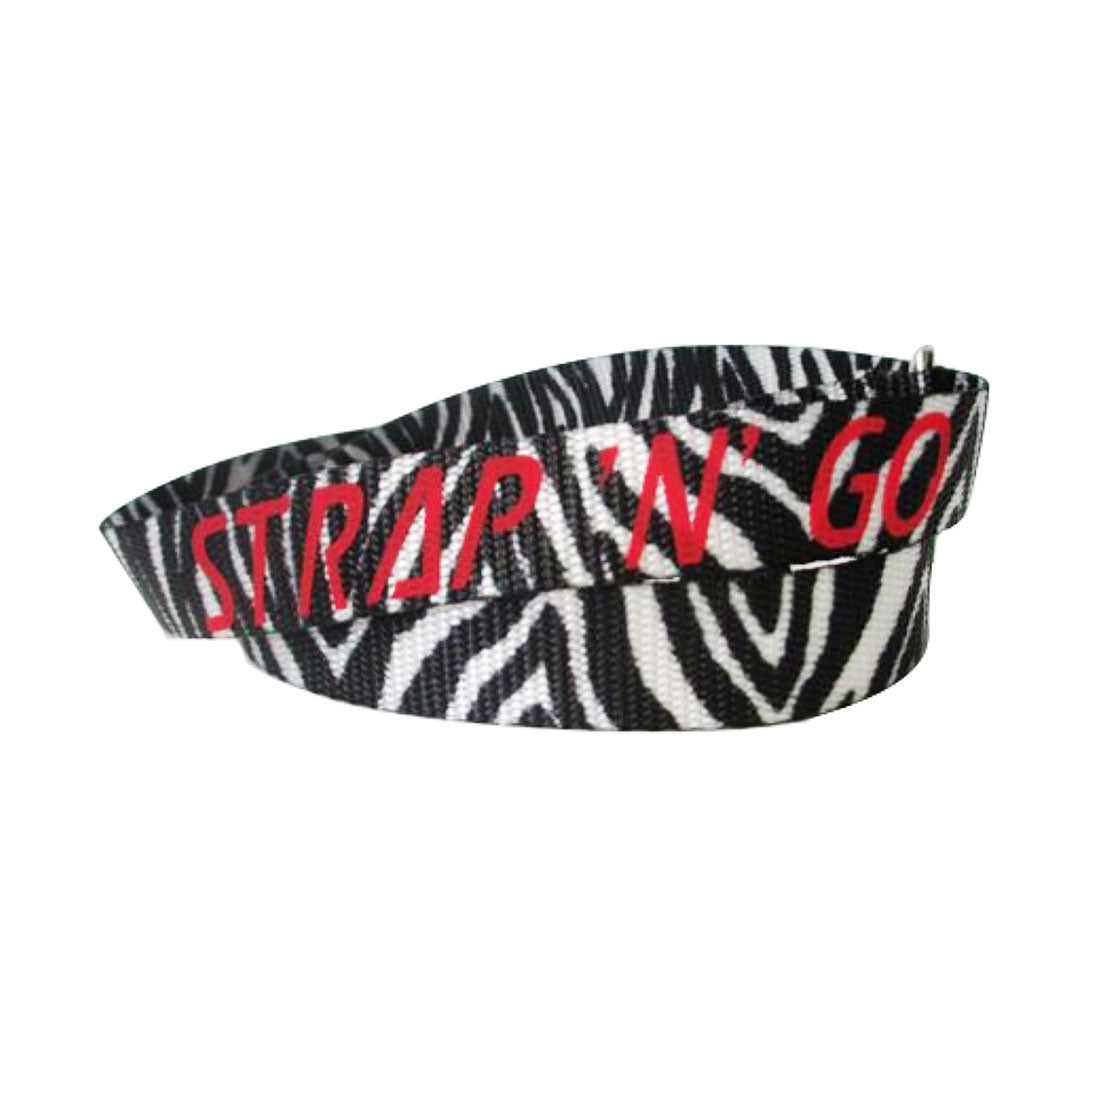 Strap N Go Skate Noose/Leash - Patterns Zebra Roller Skate Accessories